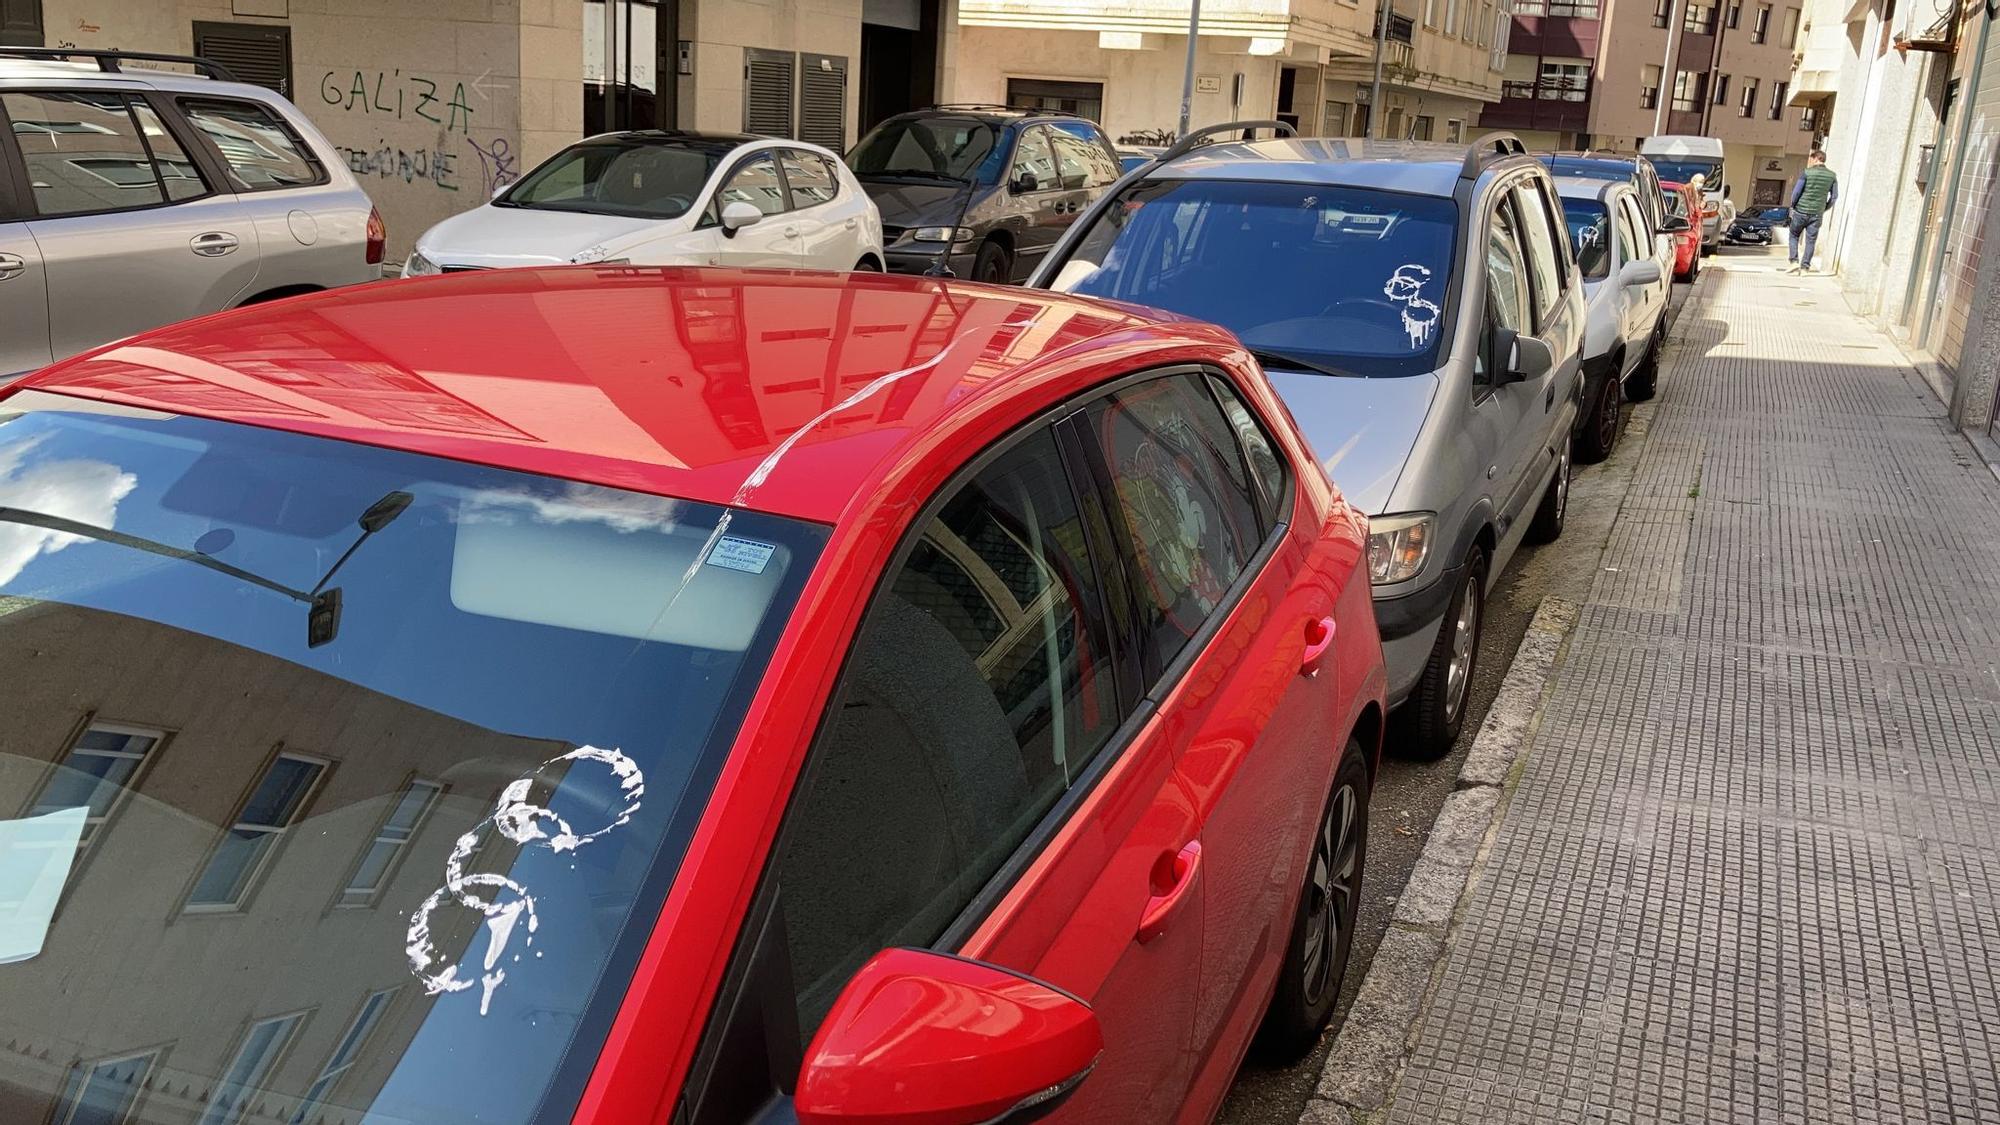 Acto vandálico: una docena de coches amanecen llenos de pintura en Vigo